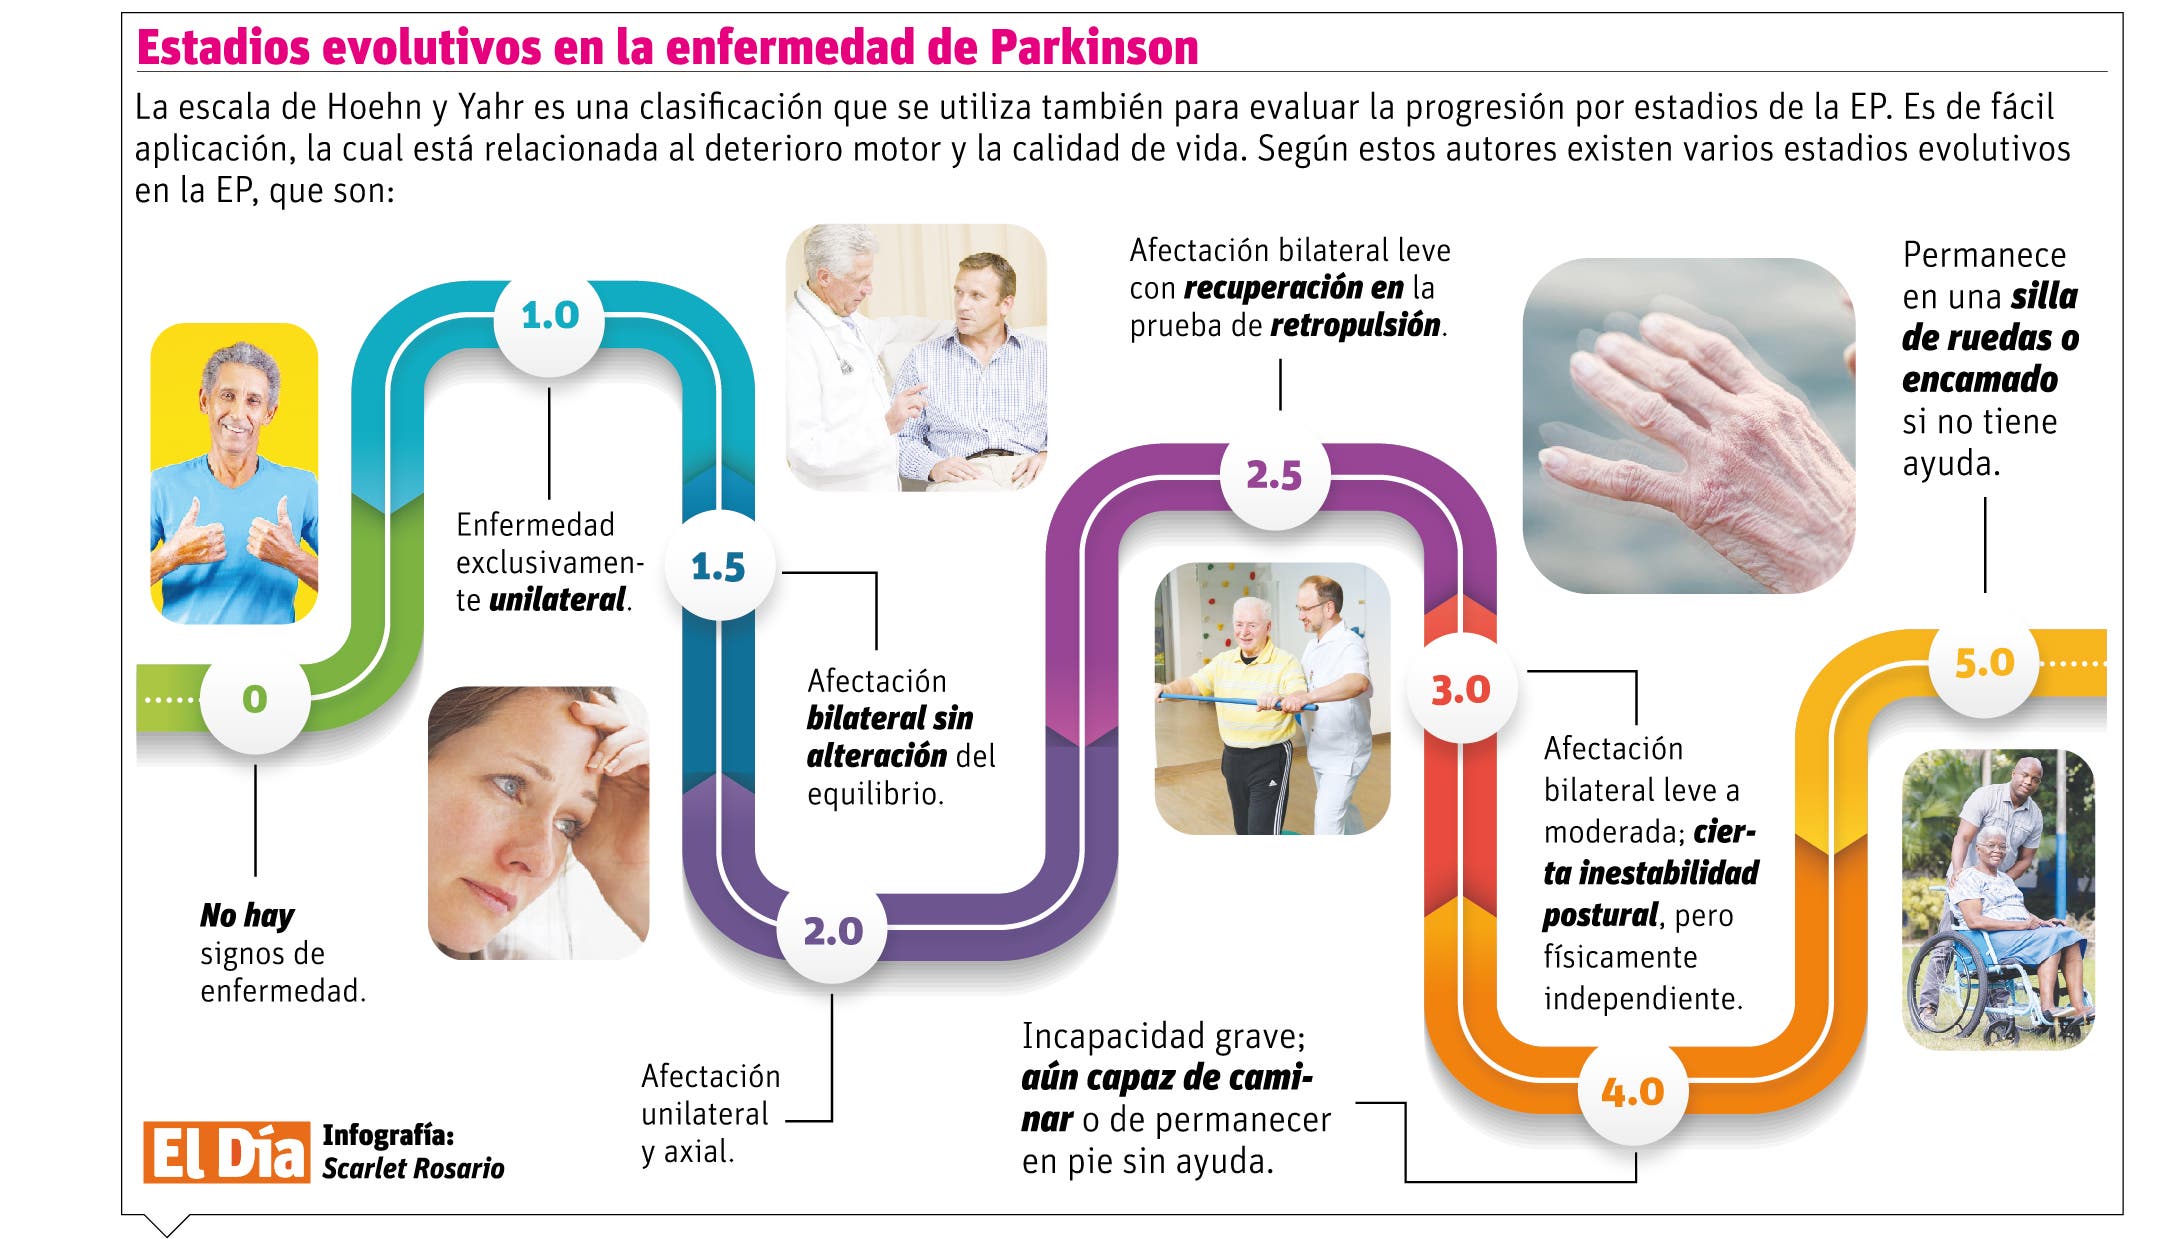 Parkinson, una enfermedad incurable